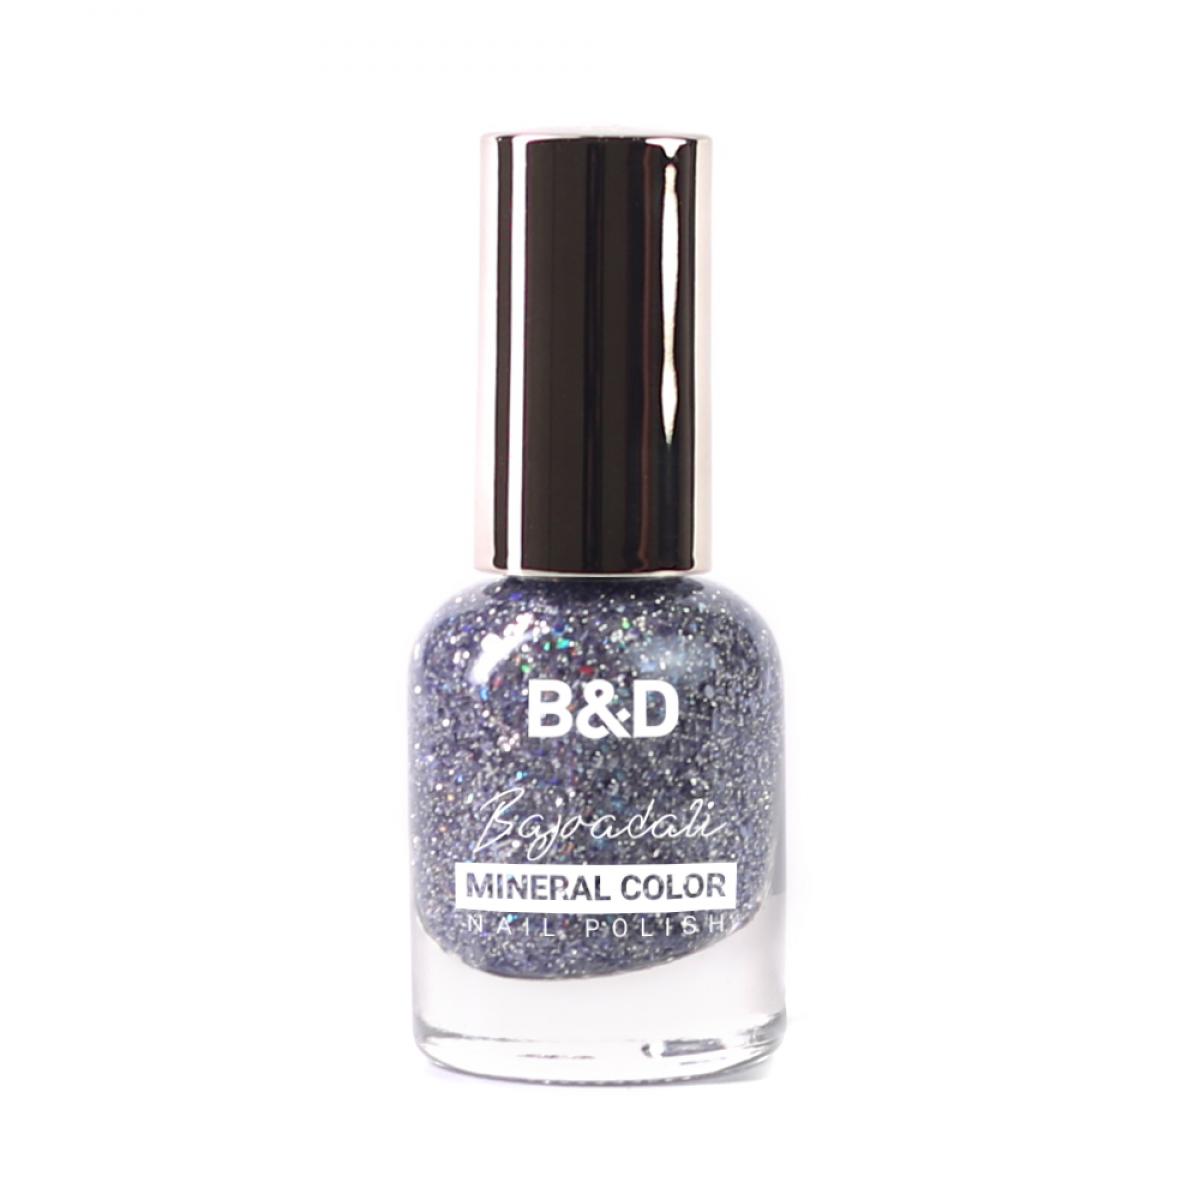 لاک گلکسی - B&D Mineral Color Galaxy Nail polish